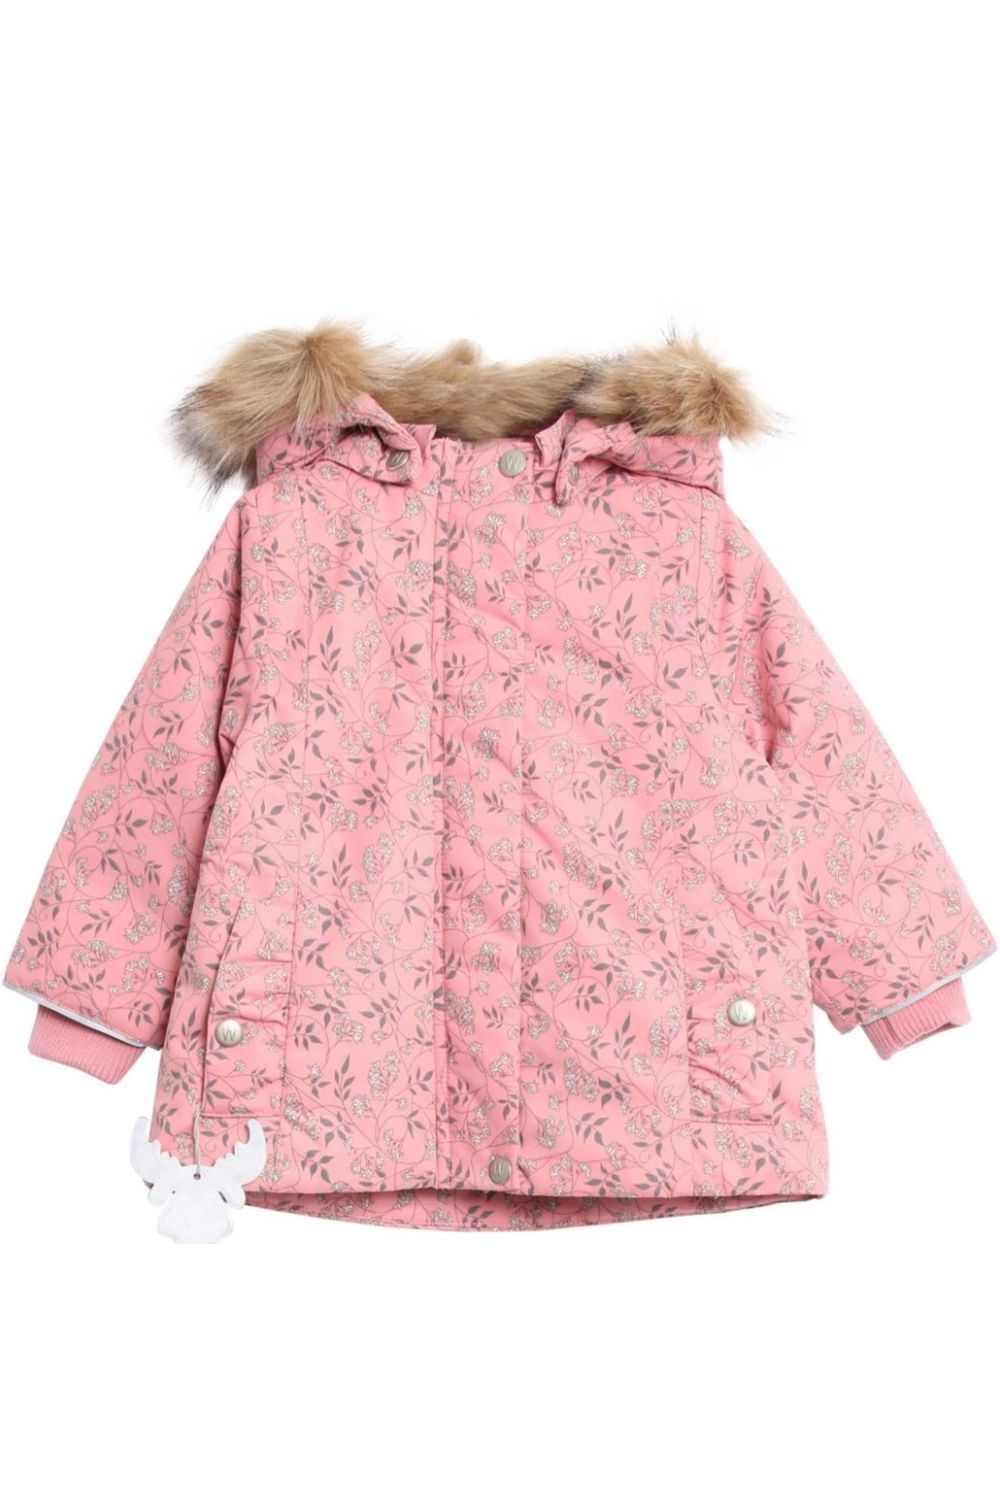 Куртка Wheat outerwear, размер 92, цвет розовый - фото 1